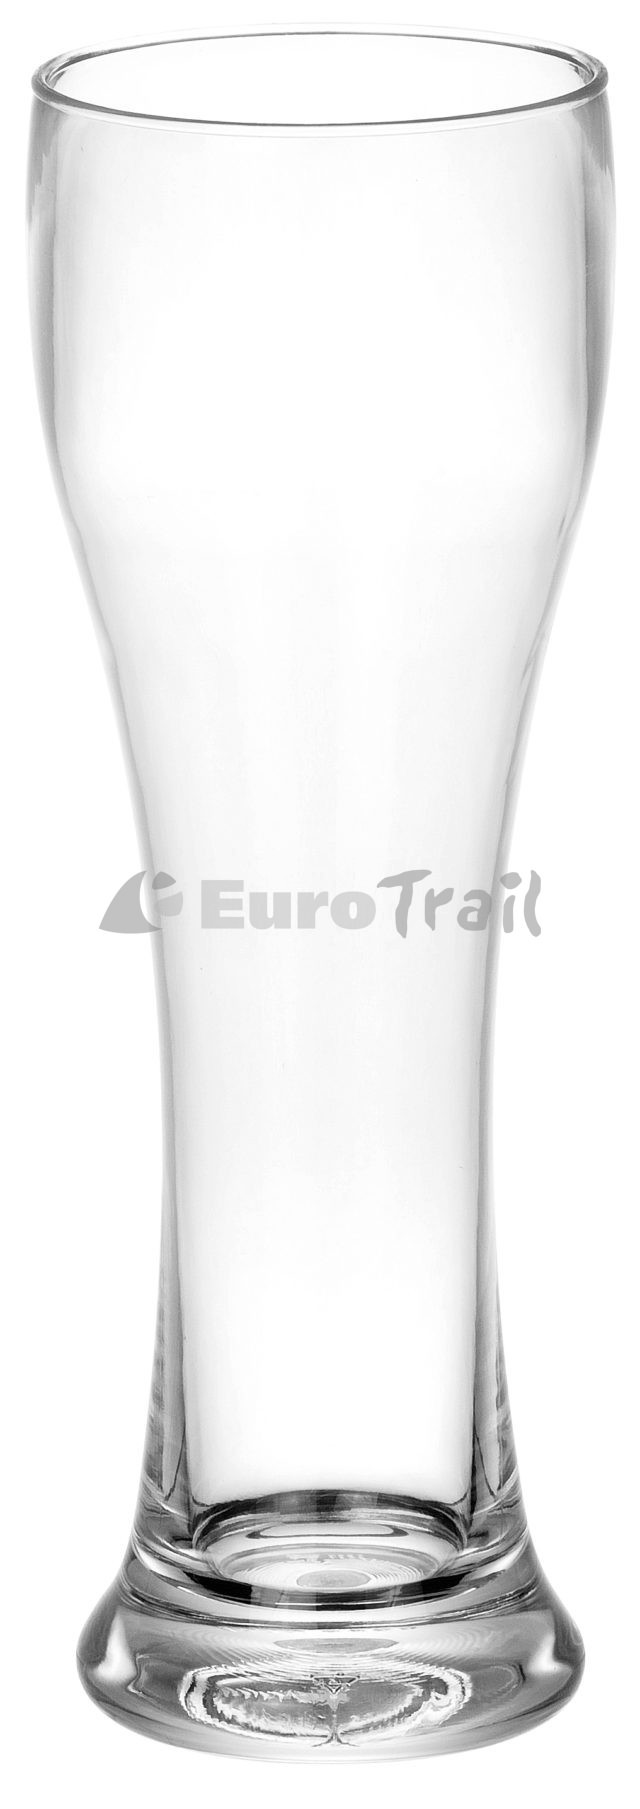 Eurotrail Witbierglas